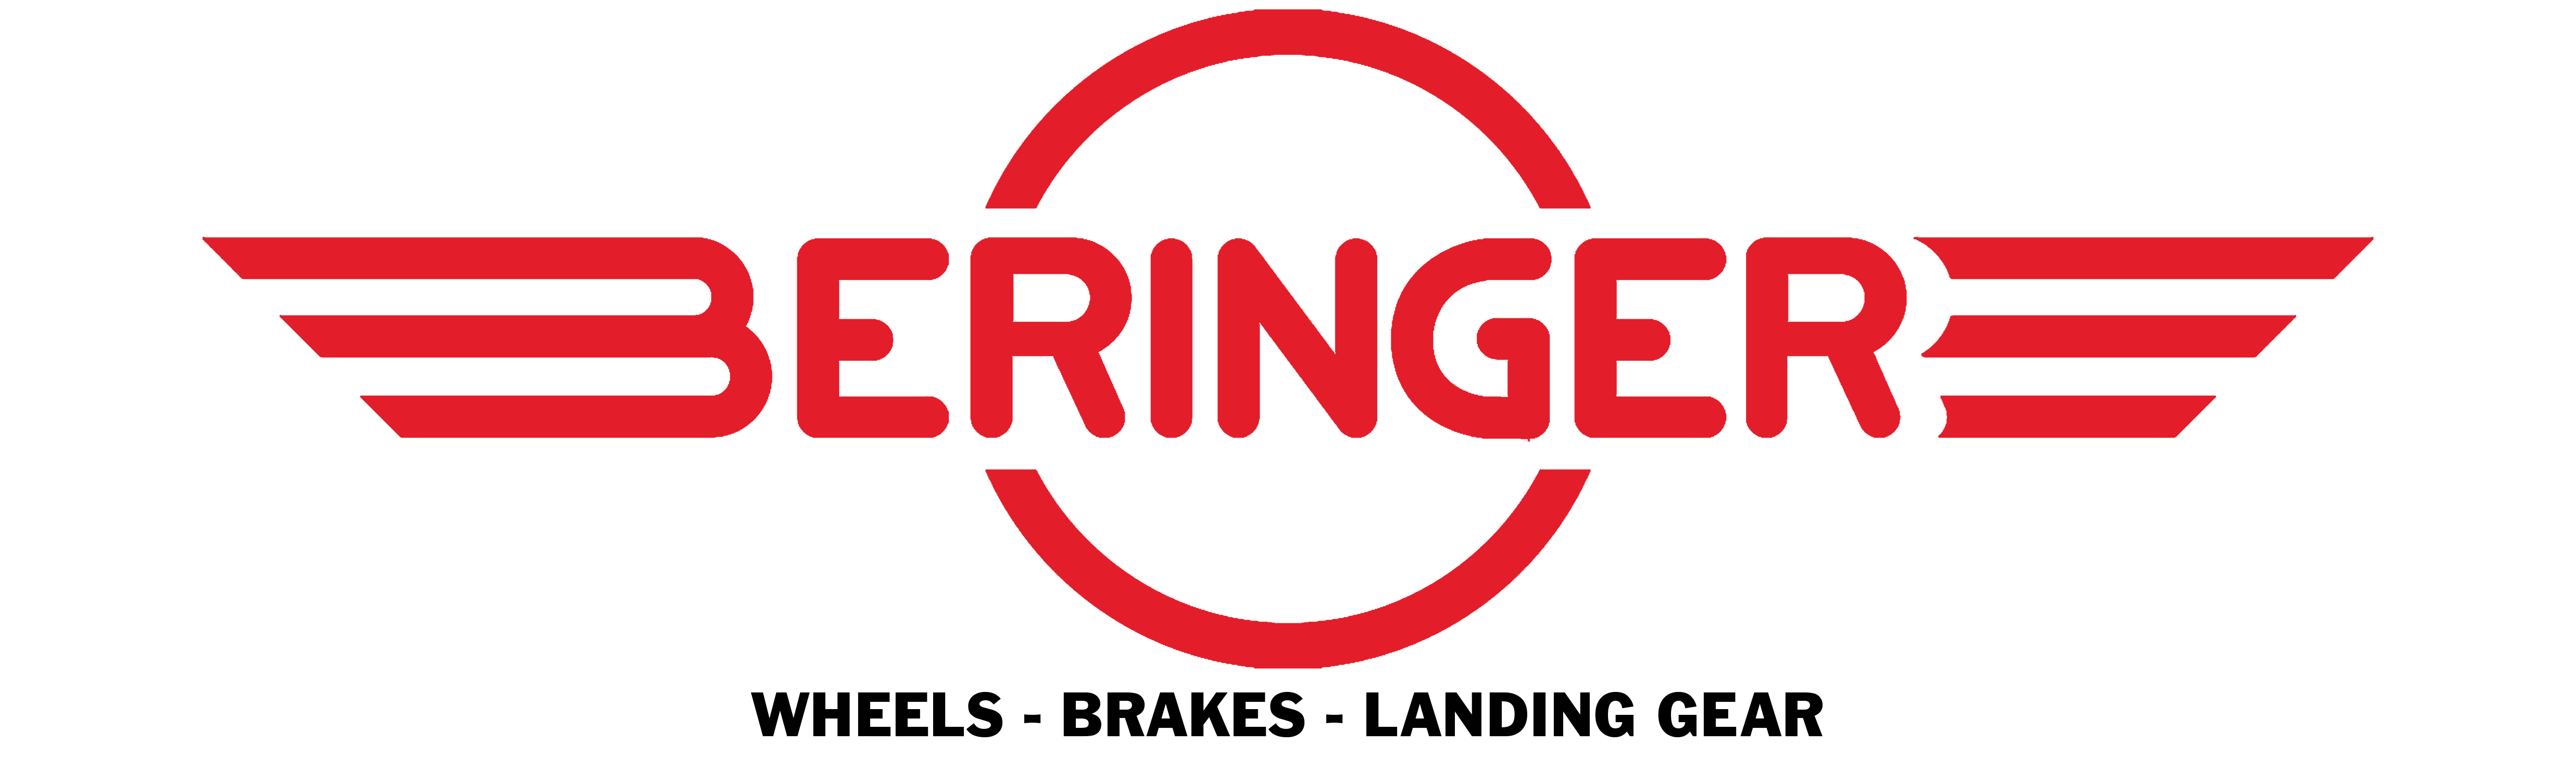 Beringer_logo